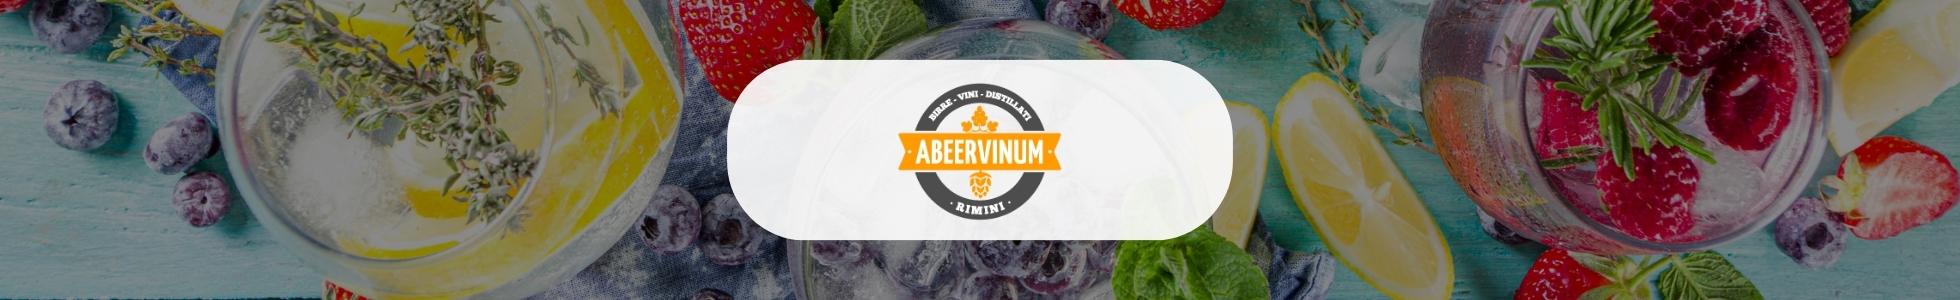 Abeervinum - shop online gin da tutto il mondo